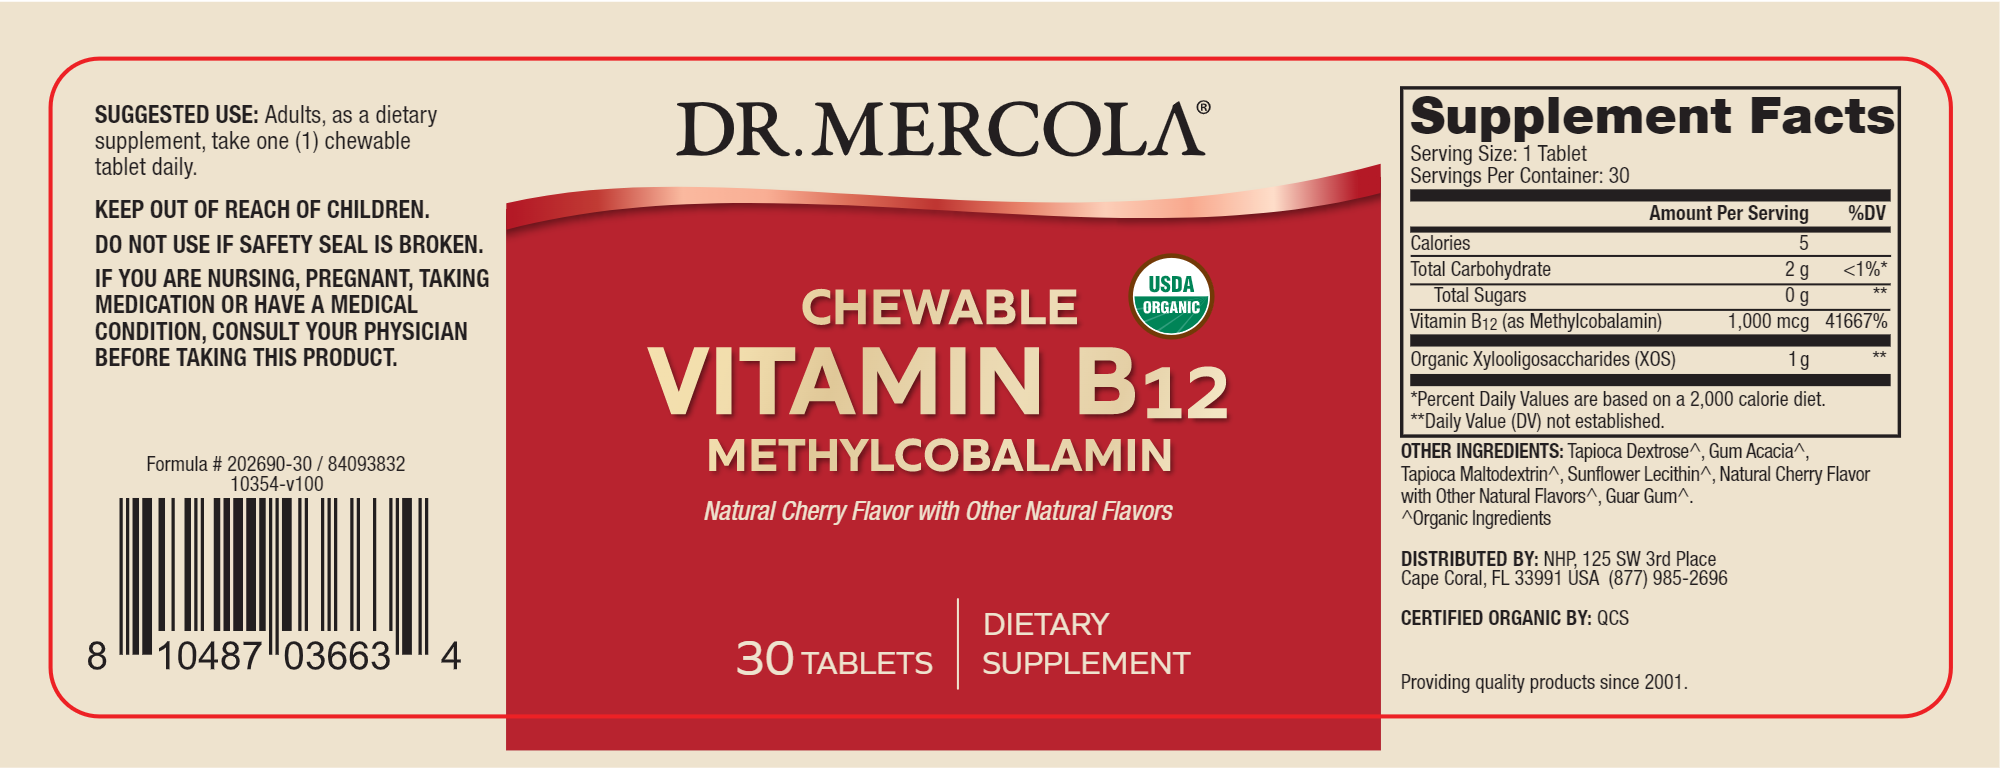 MERCOLA Vitamin B12 Chewable 30 tabs INGREDIENTS